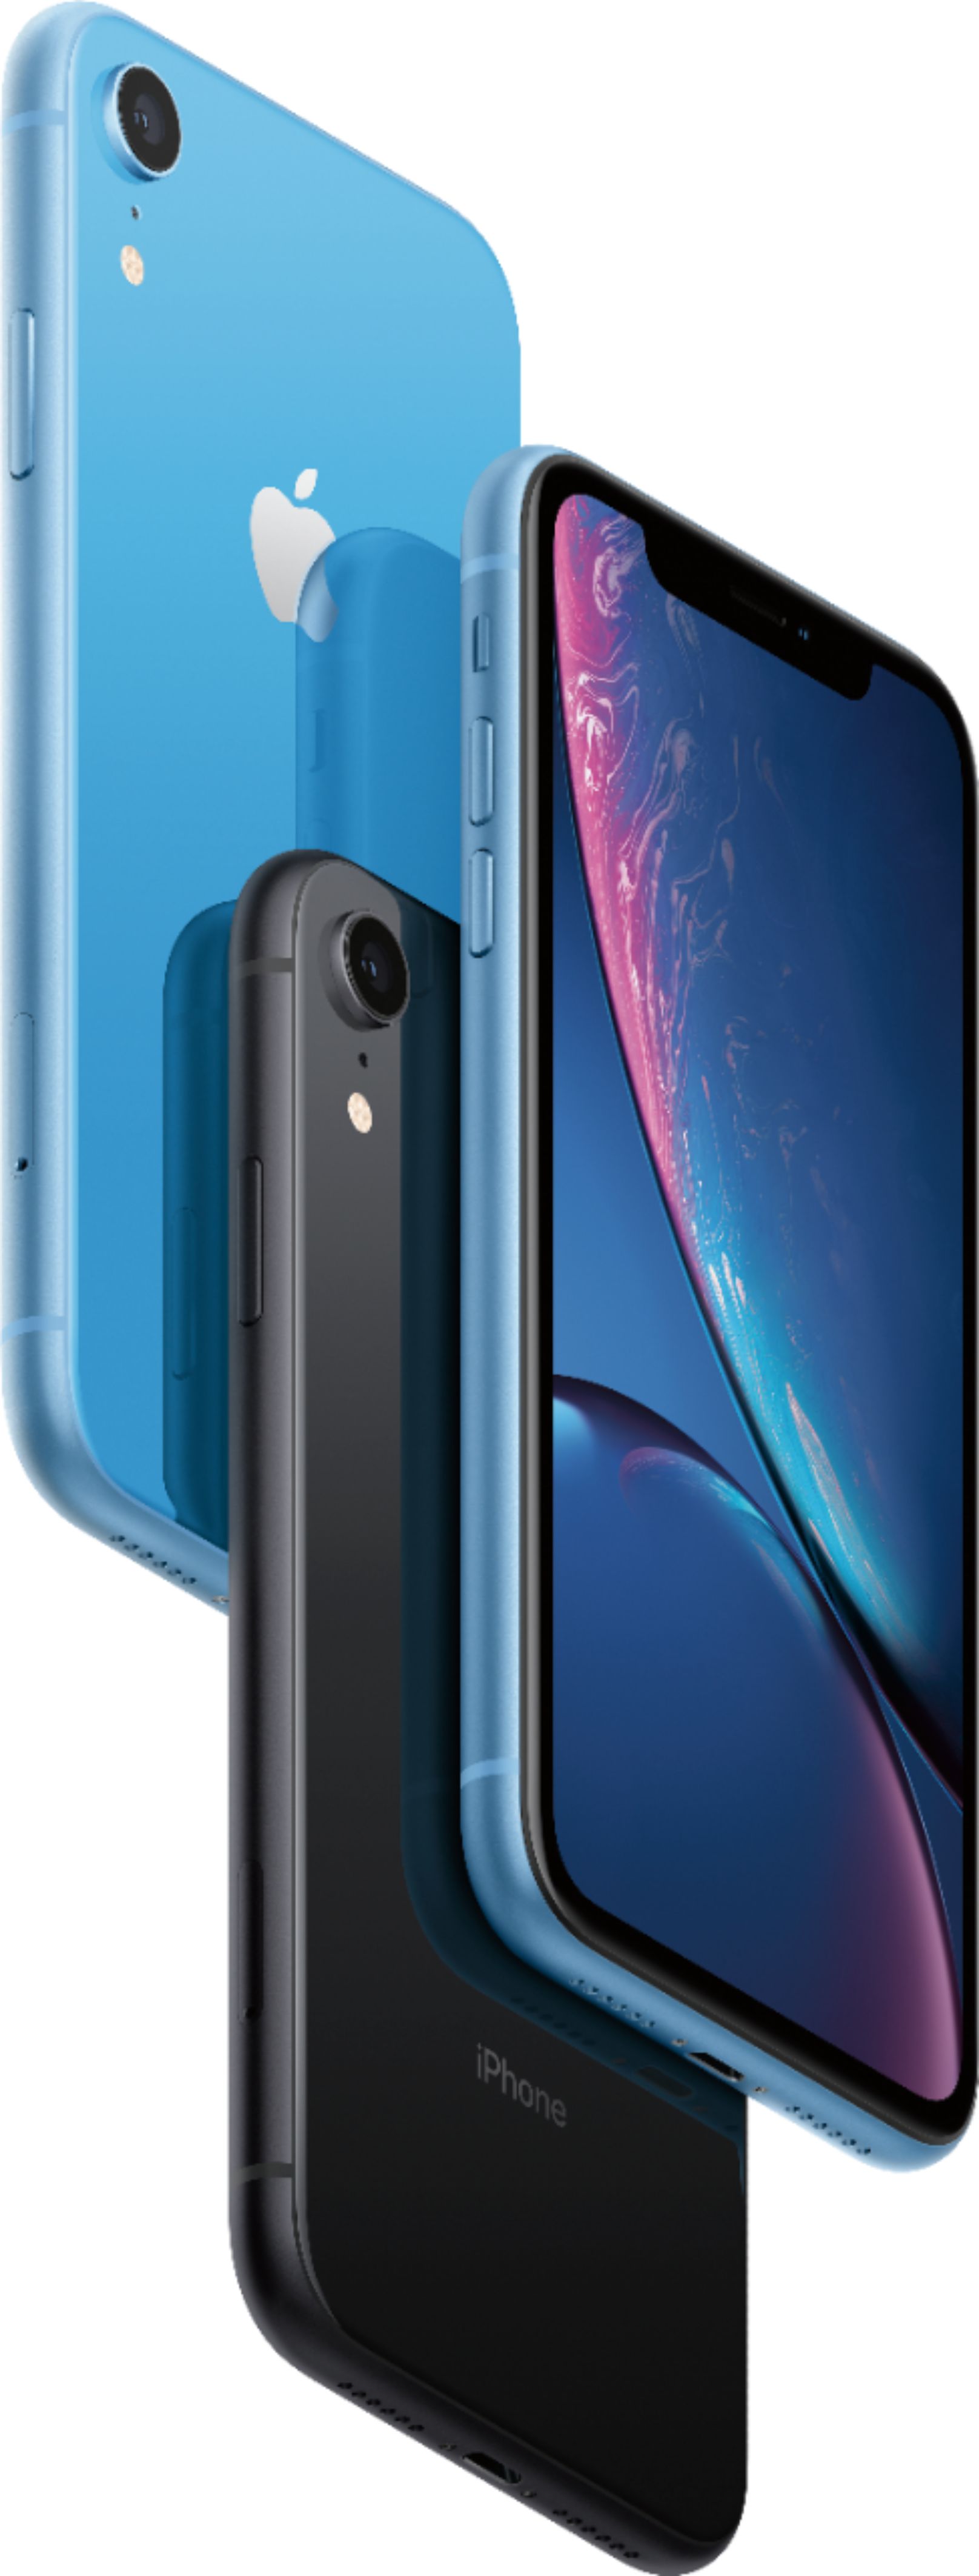 Apple Iphone XR - 64GB - Blue (Desbloqueado) -iph-xr-64-blue